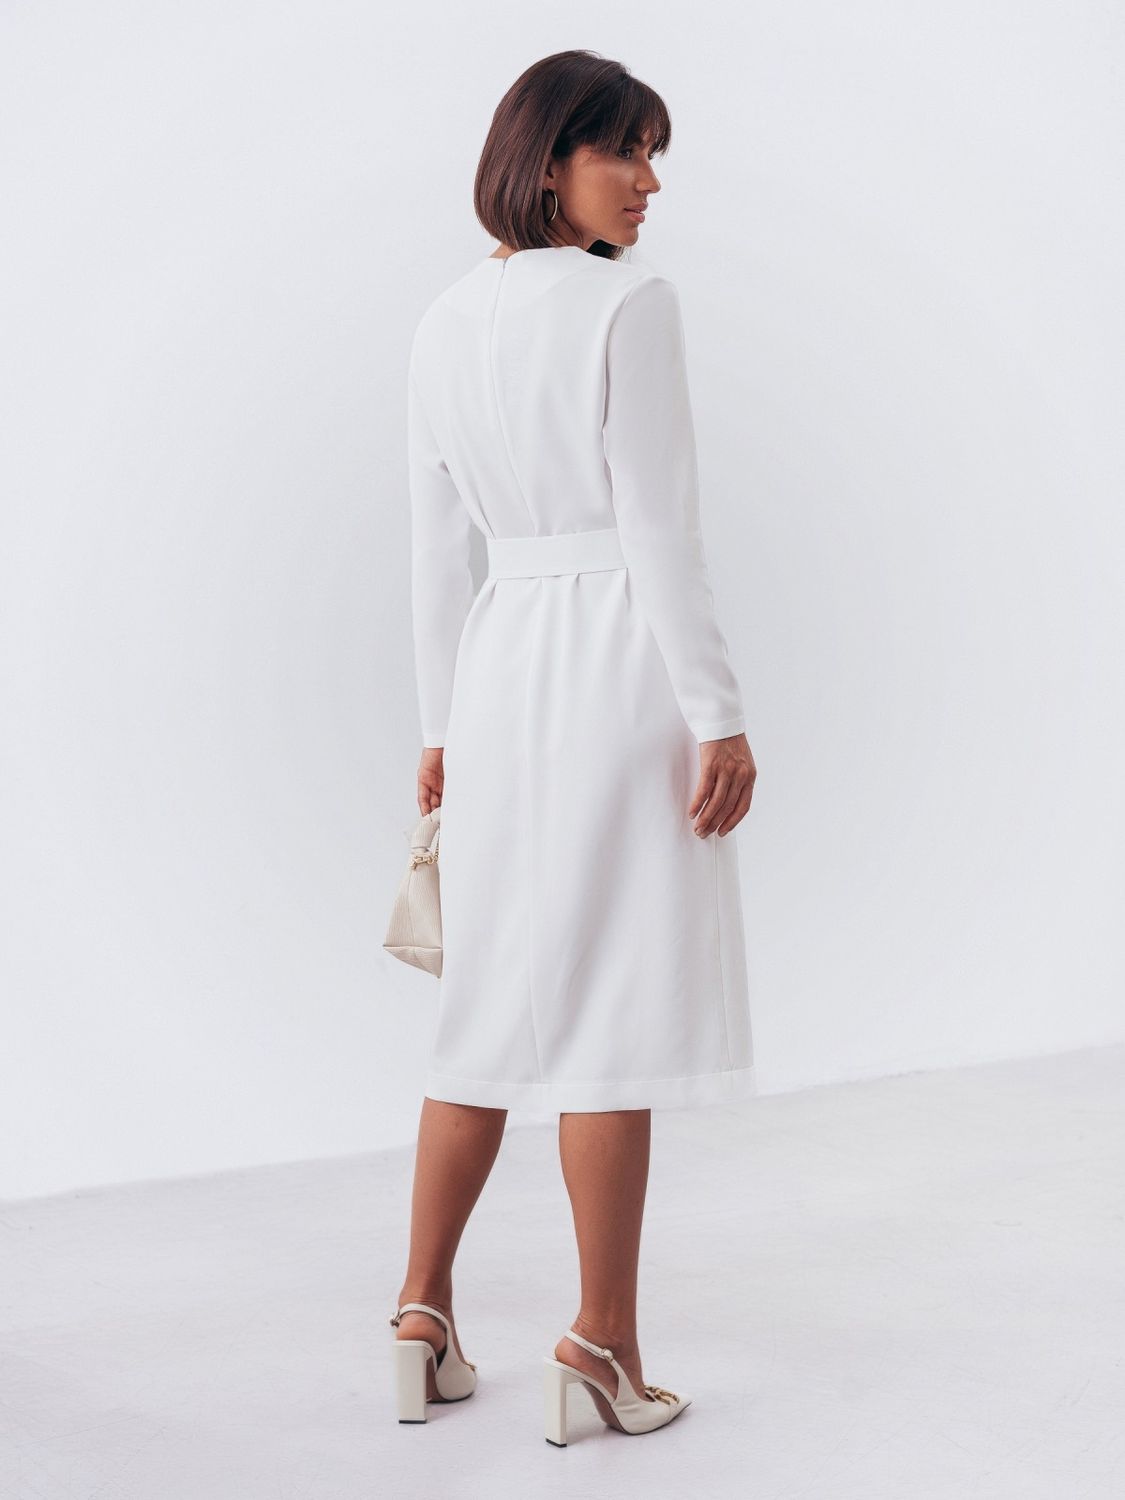 Белое женское платье футляр - фото